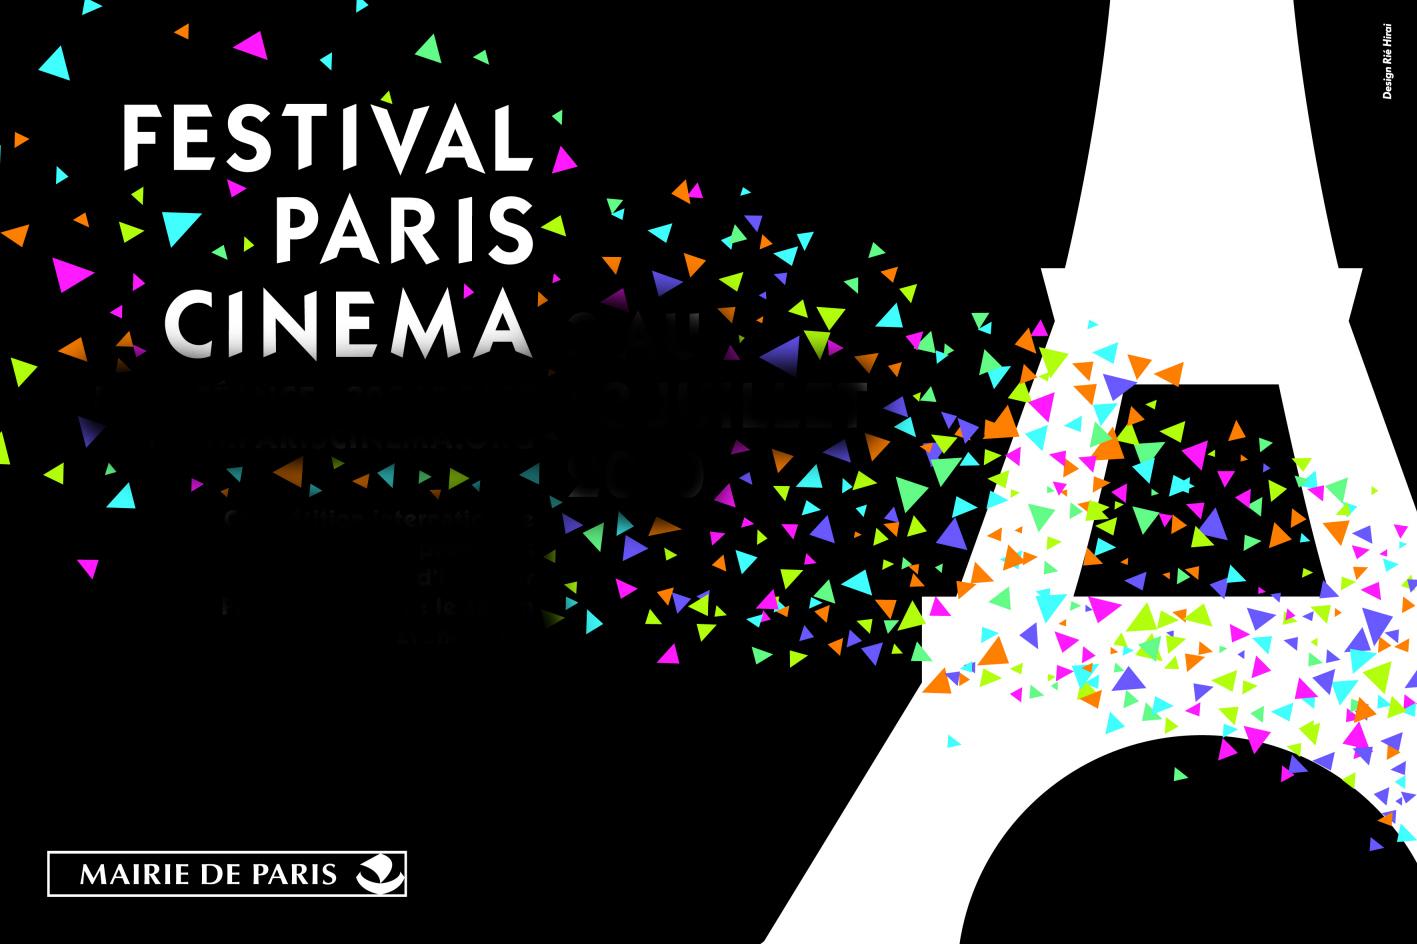 Le Festival Paris Cinéma 2012 saluera le cinéma hongkongais